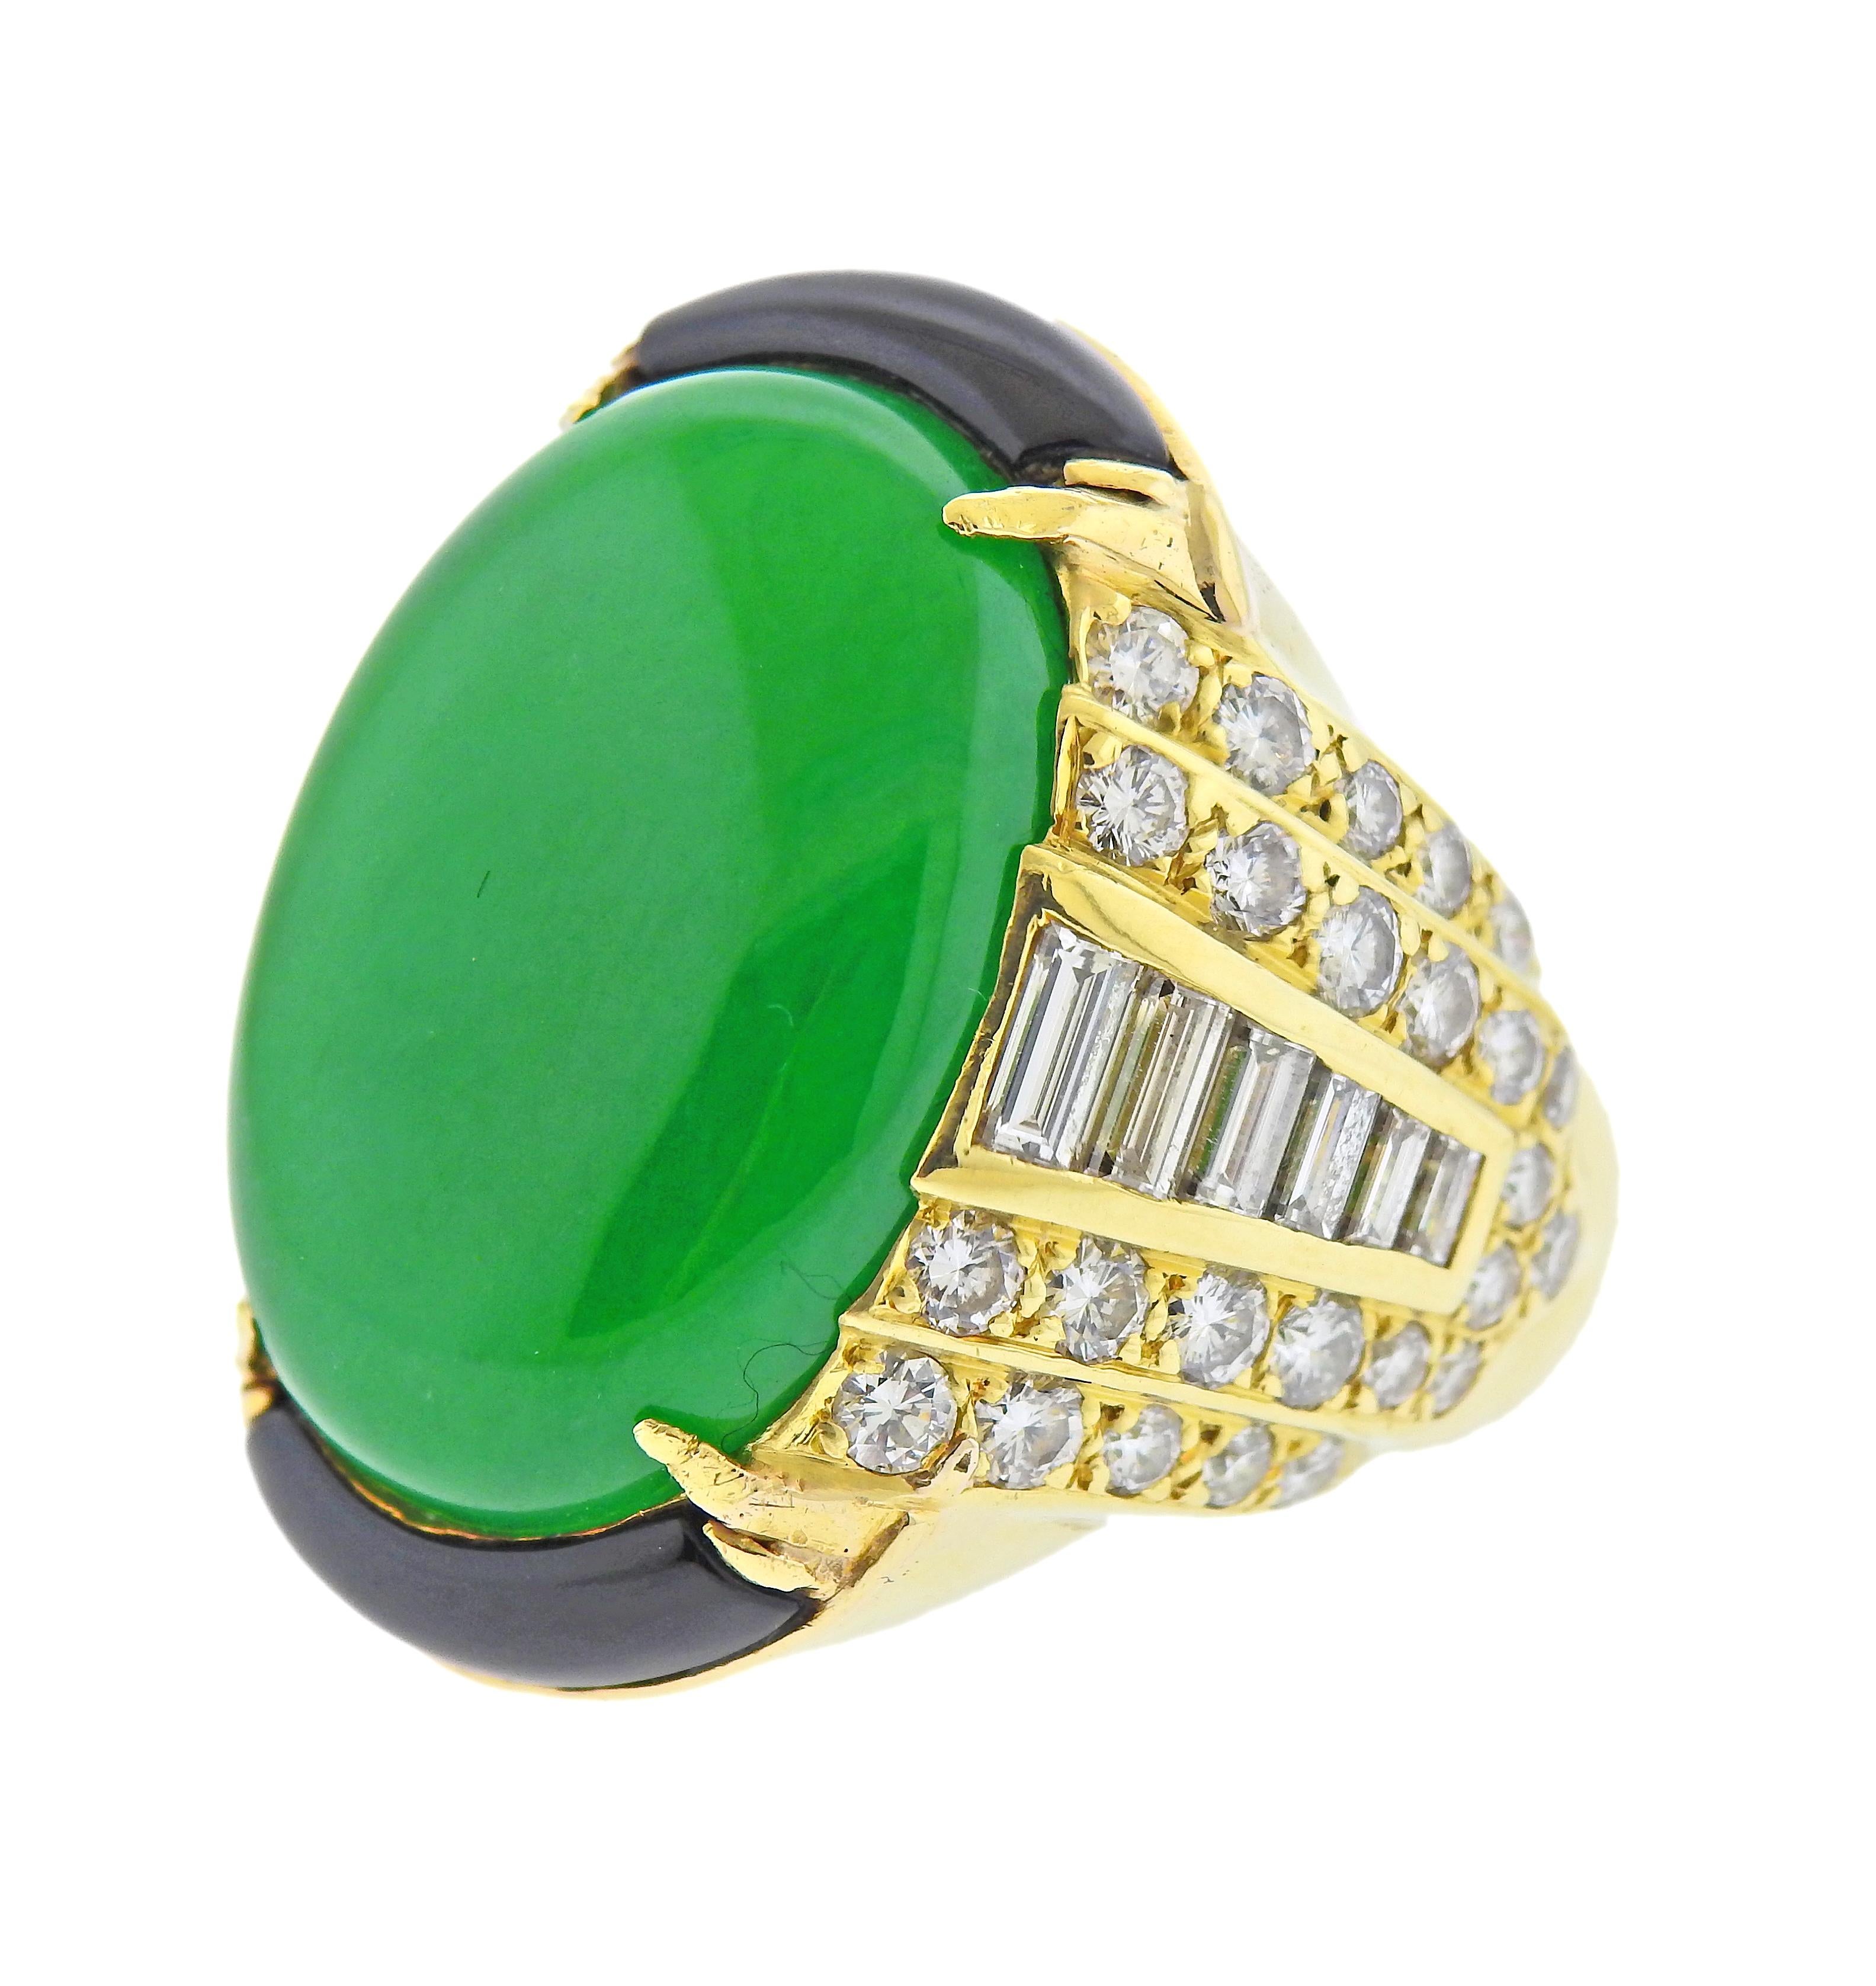 GIA-zertifizierter natürlicher Jadeit-Jade-Cabochon mit den Maßen 24,21 x 17,21 x 6,00 mm, eingefasst in einen Ring aus 18 Karat Gold, umgeben von Onyx und ca. 3,00ctw an Diamanten. Ringgröße - 7,5, die Ringspitze ist 30 mm breit. Gezeichnet: 18k.